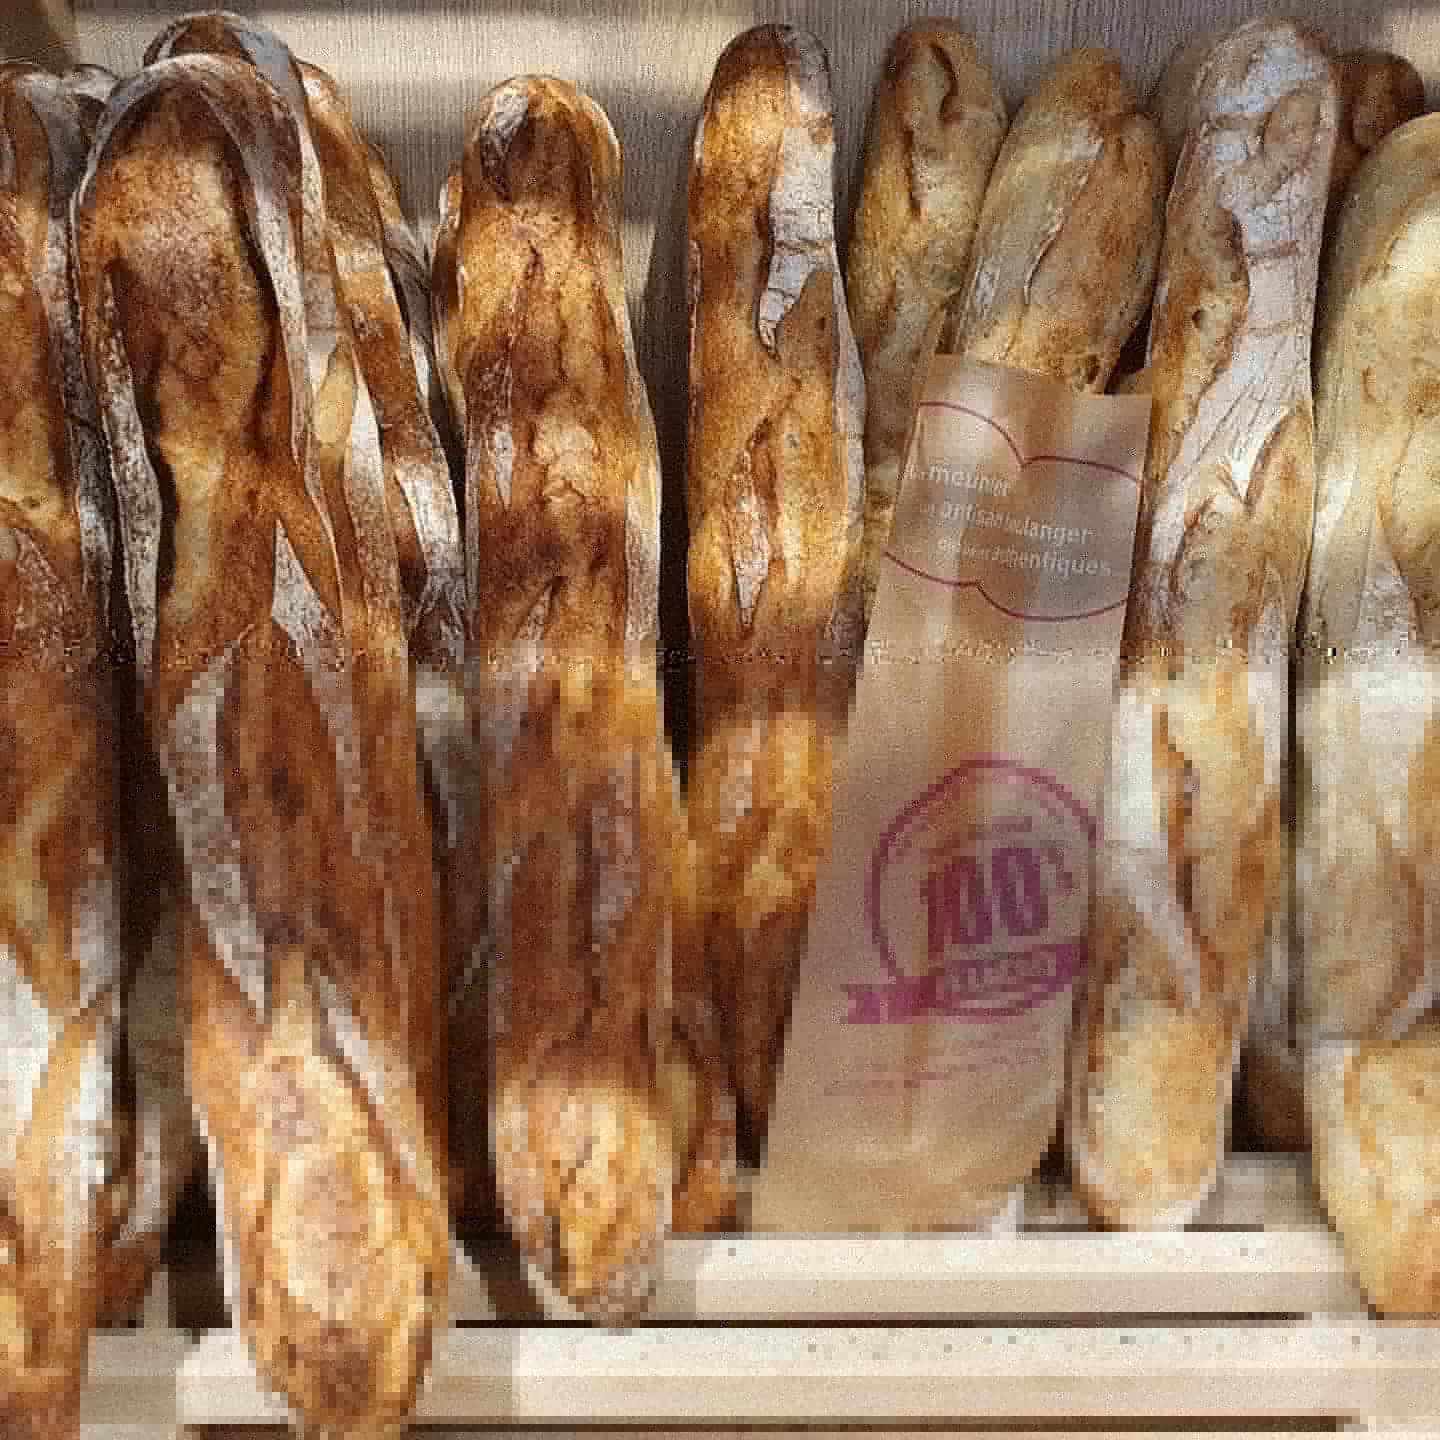 Boulangerie artisanale La Clusaz